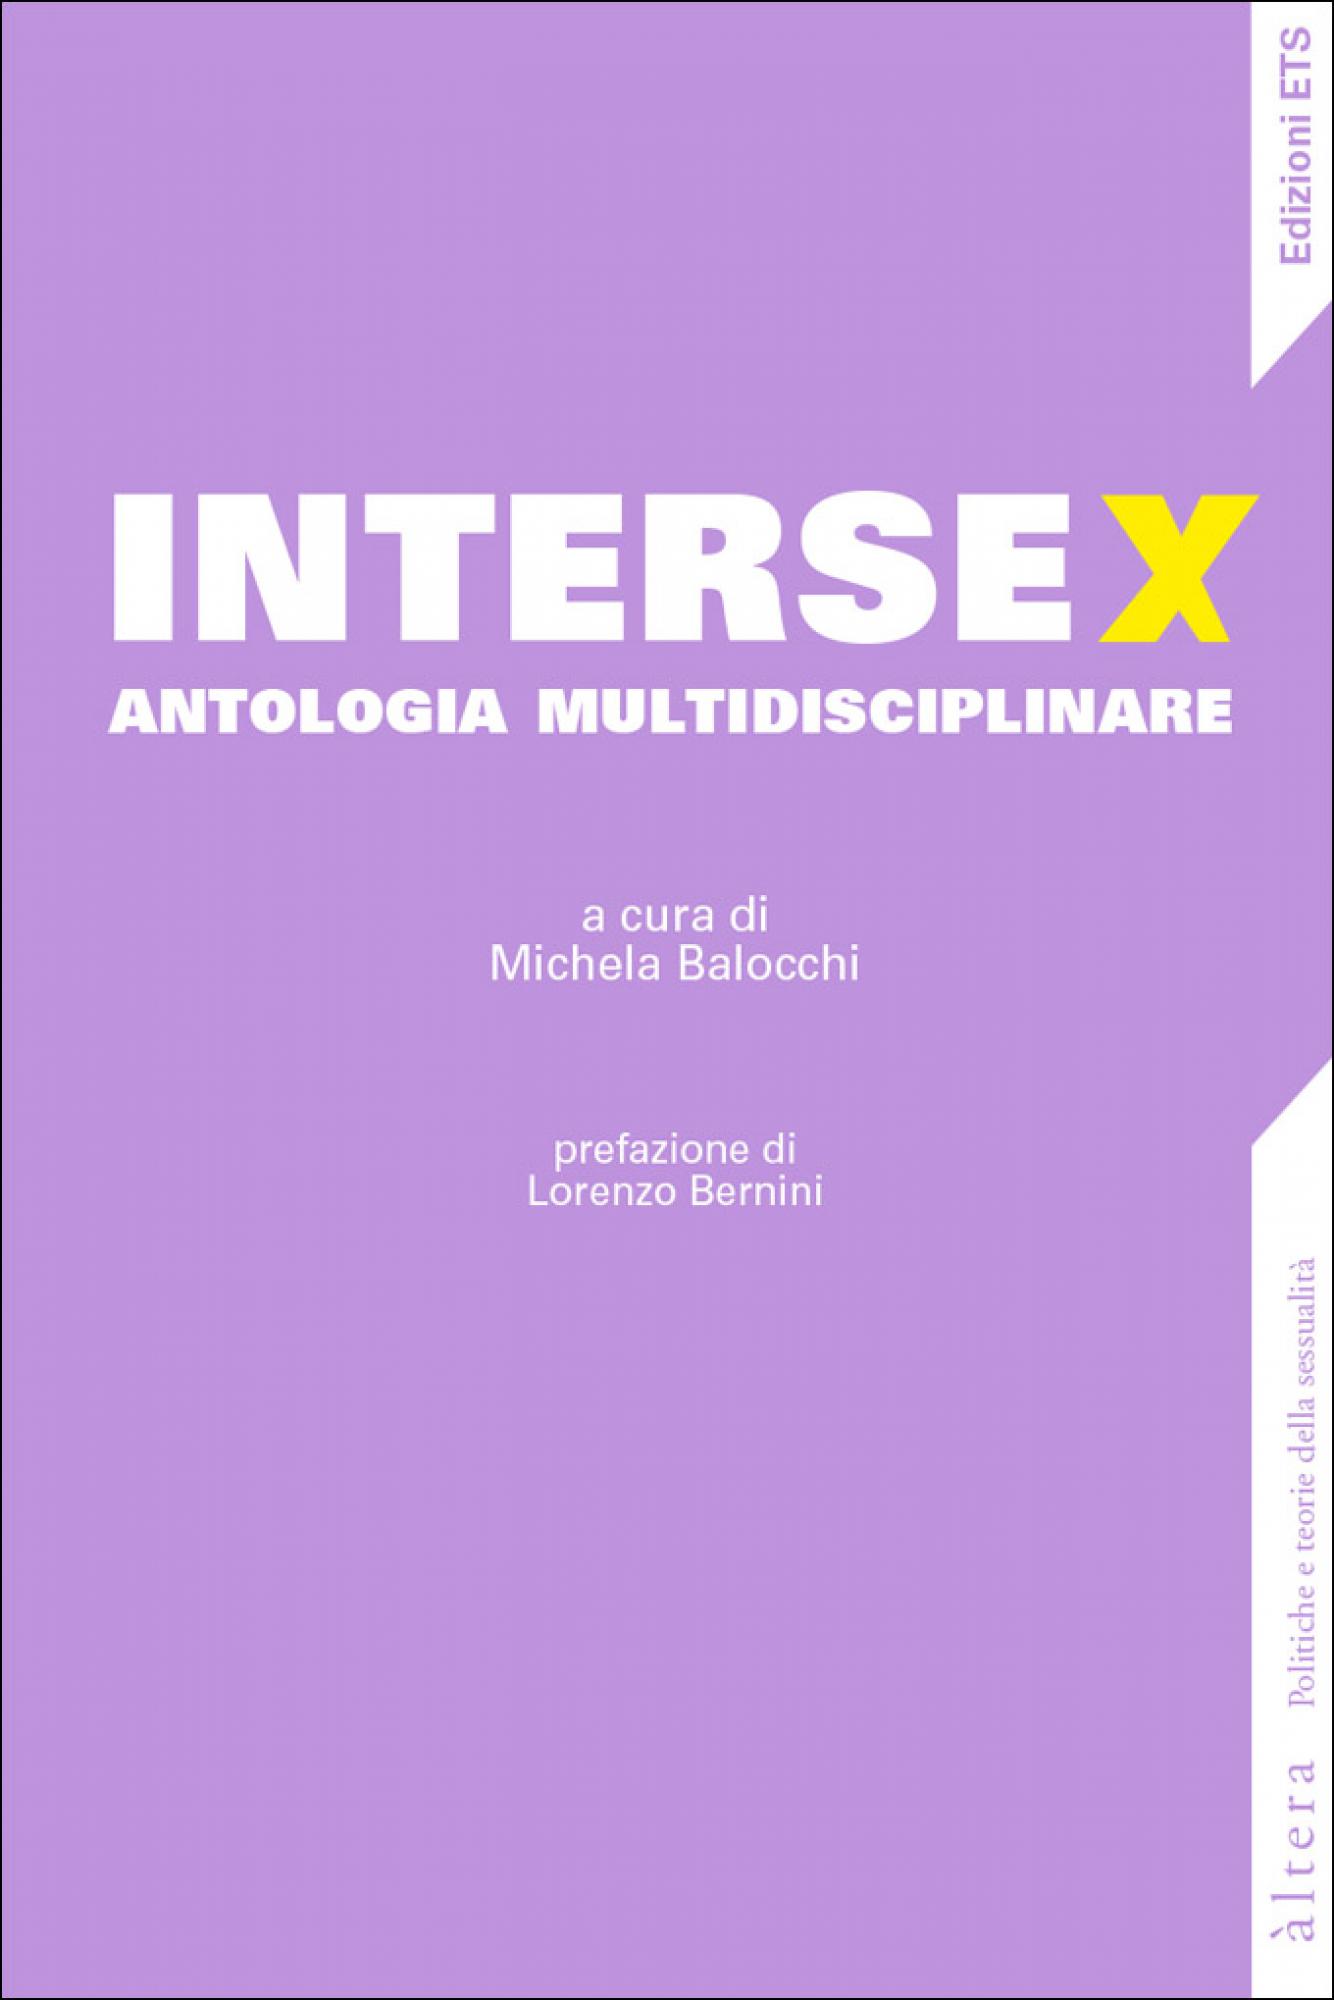 Intersex.antologia multidisciplinare